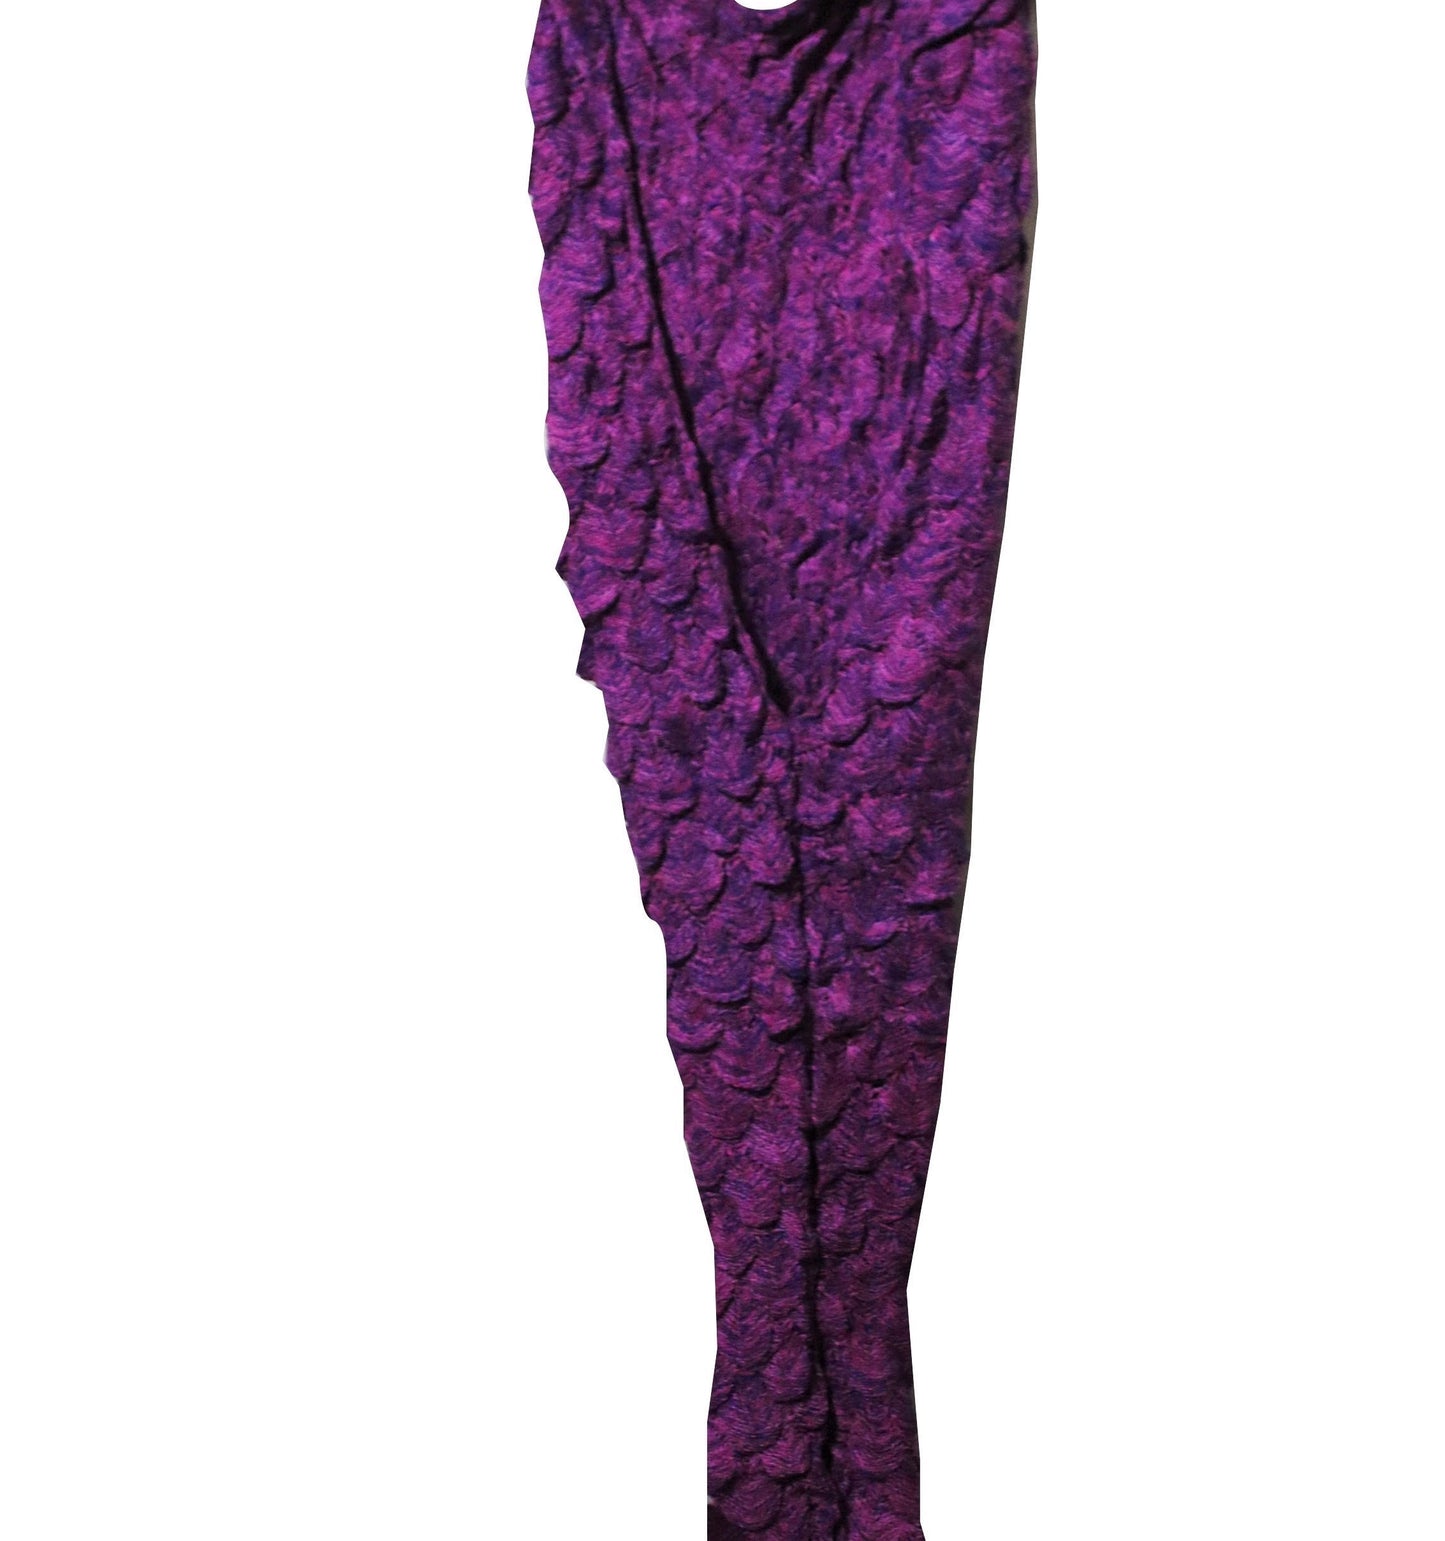 Crochet Adult/Teens Mermaid Blanket with Tail  fringes Dark Purple-Pink